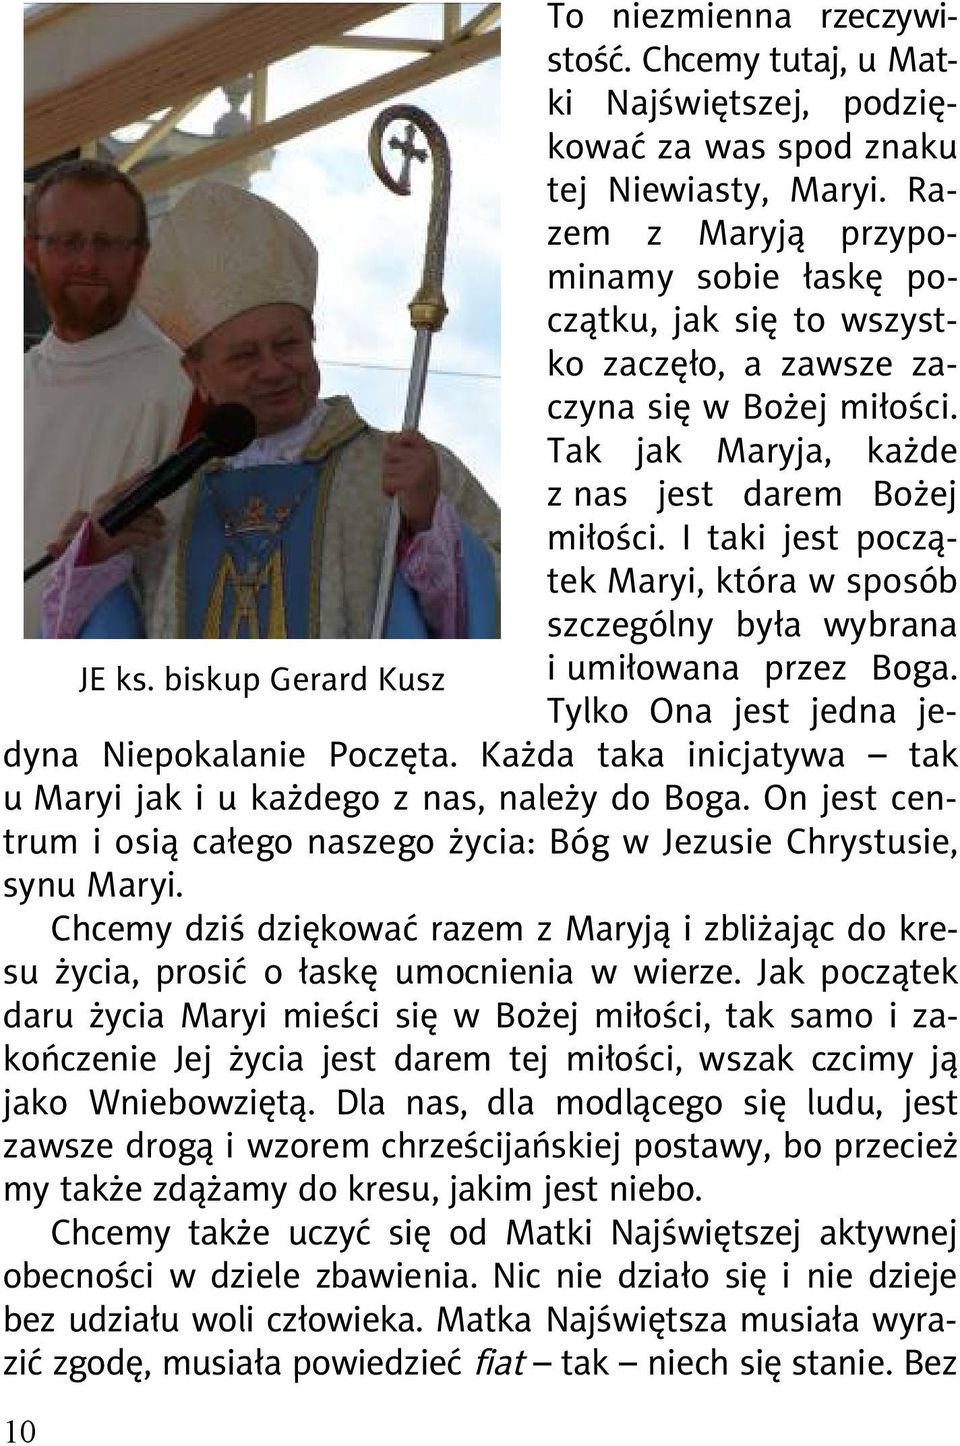 I taki jest pocz tek Maryi, która w sposób szczególny by a wybrana JE ks. biskup Gerard Kusz i umi owana przez Boga. Tylko Ona jest jedna jedyna Niepokalanie Pocz ta.